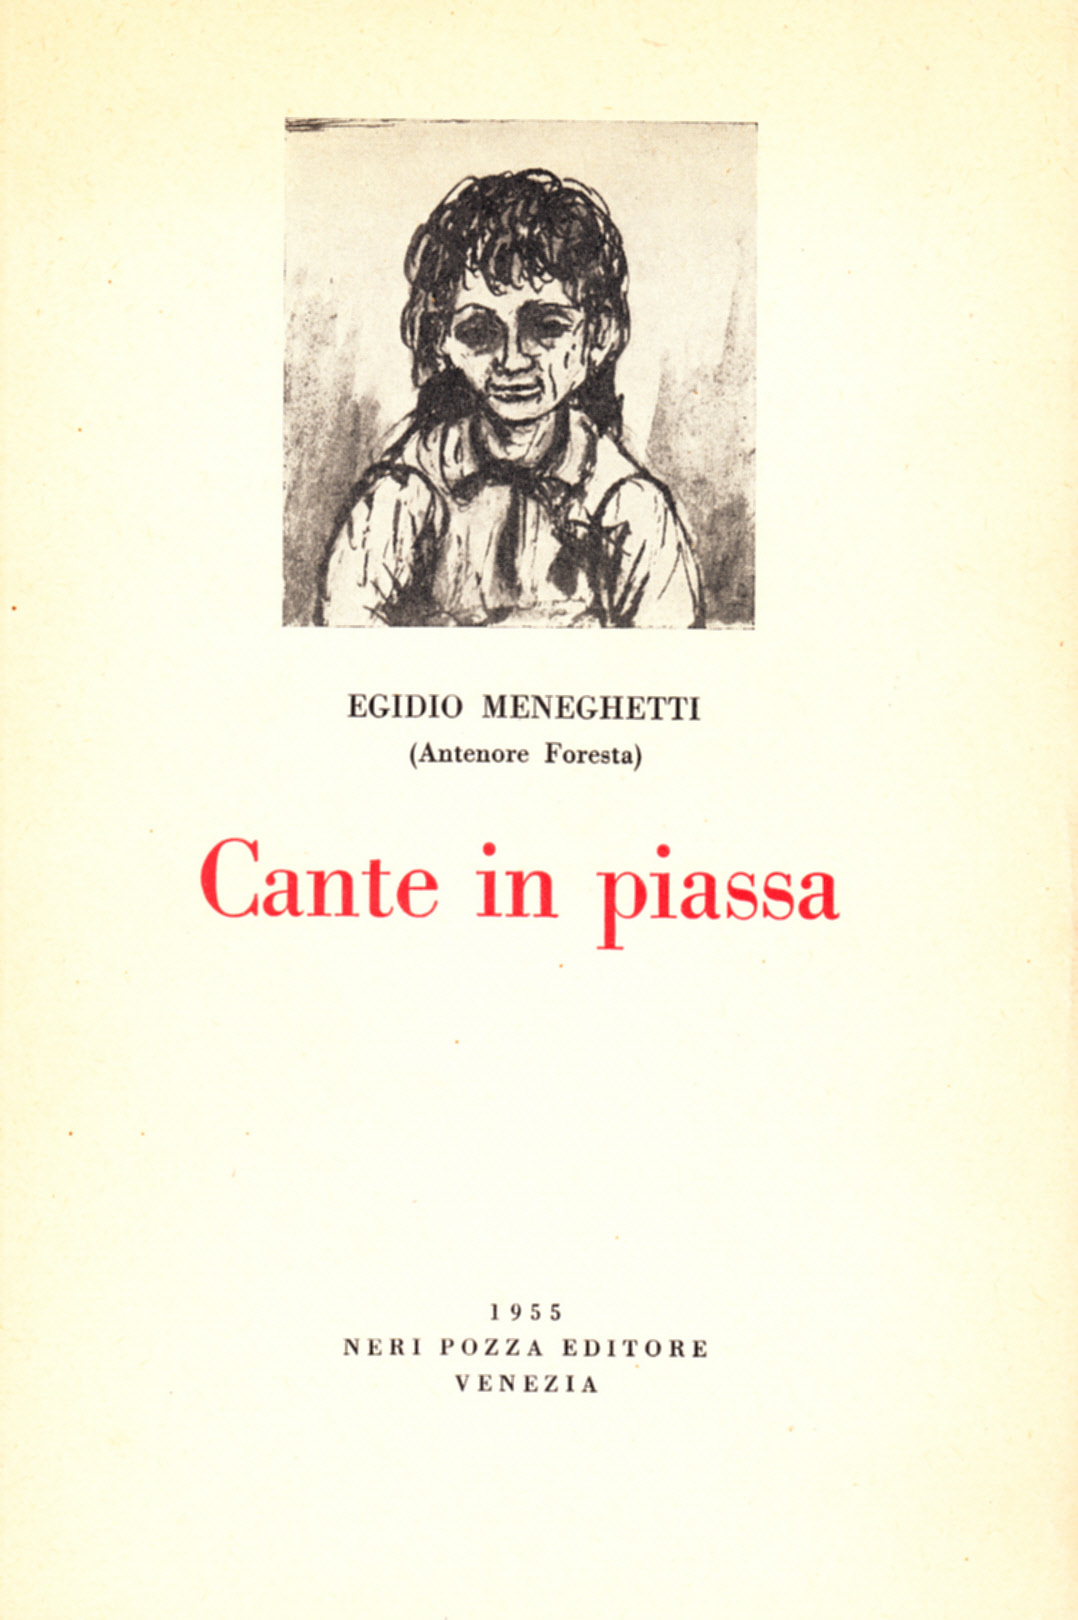 Egidio Meneghetti, Cante in piassa, Neri Pozza 1955